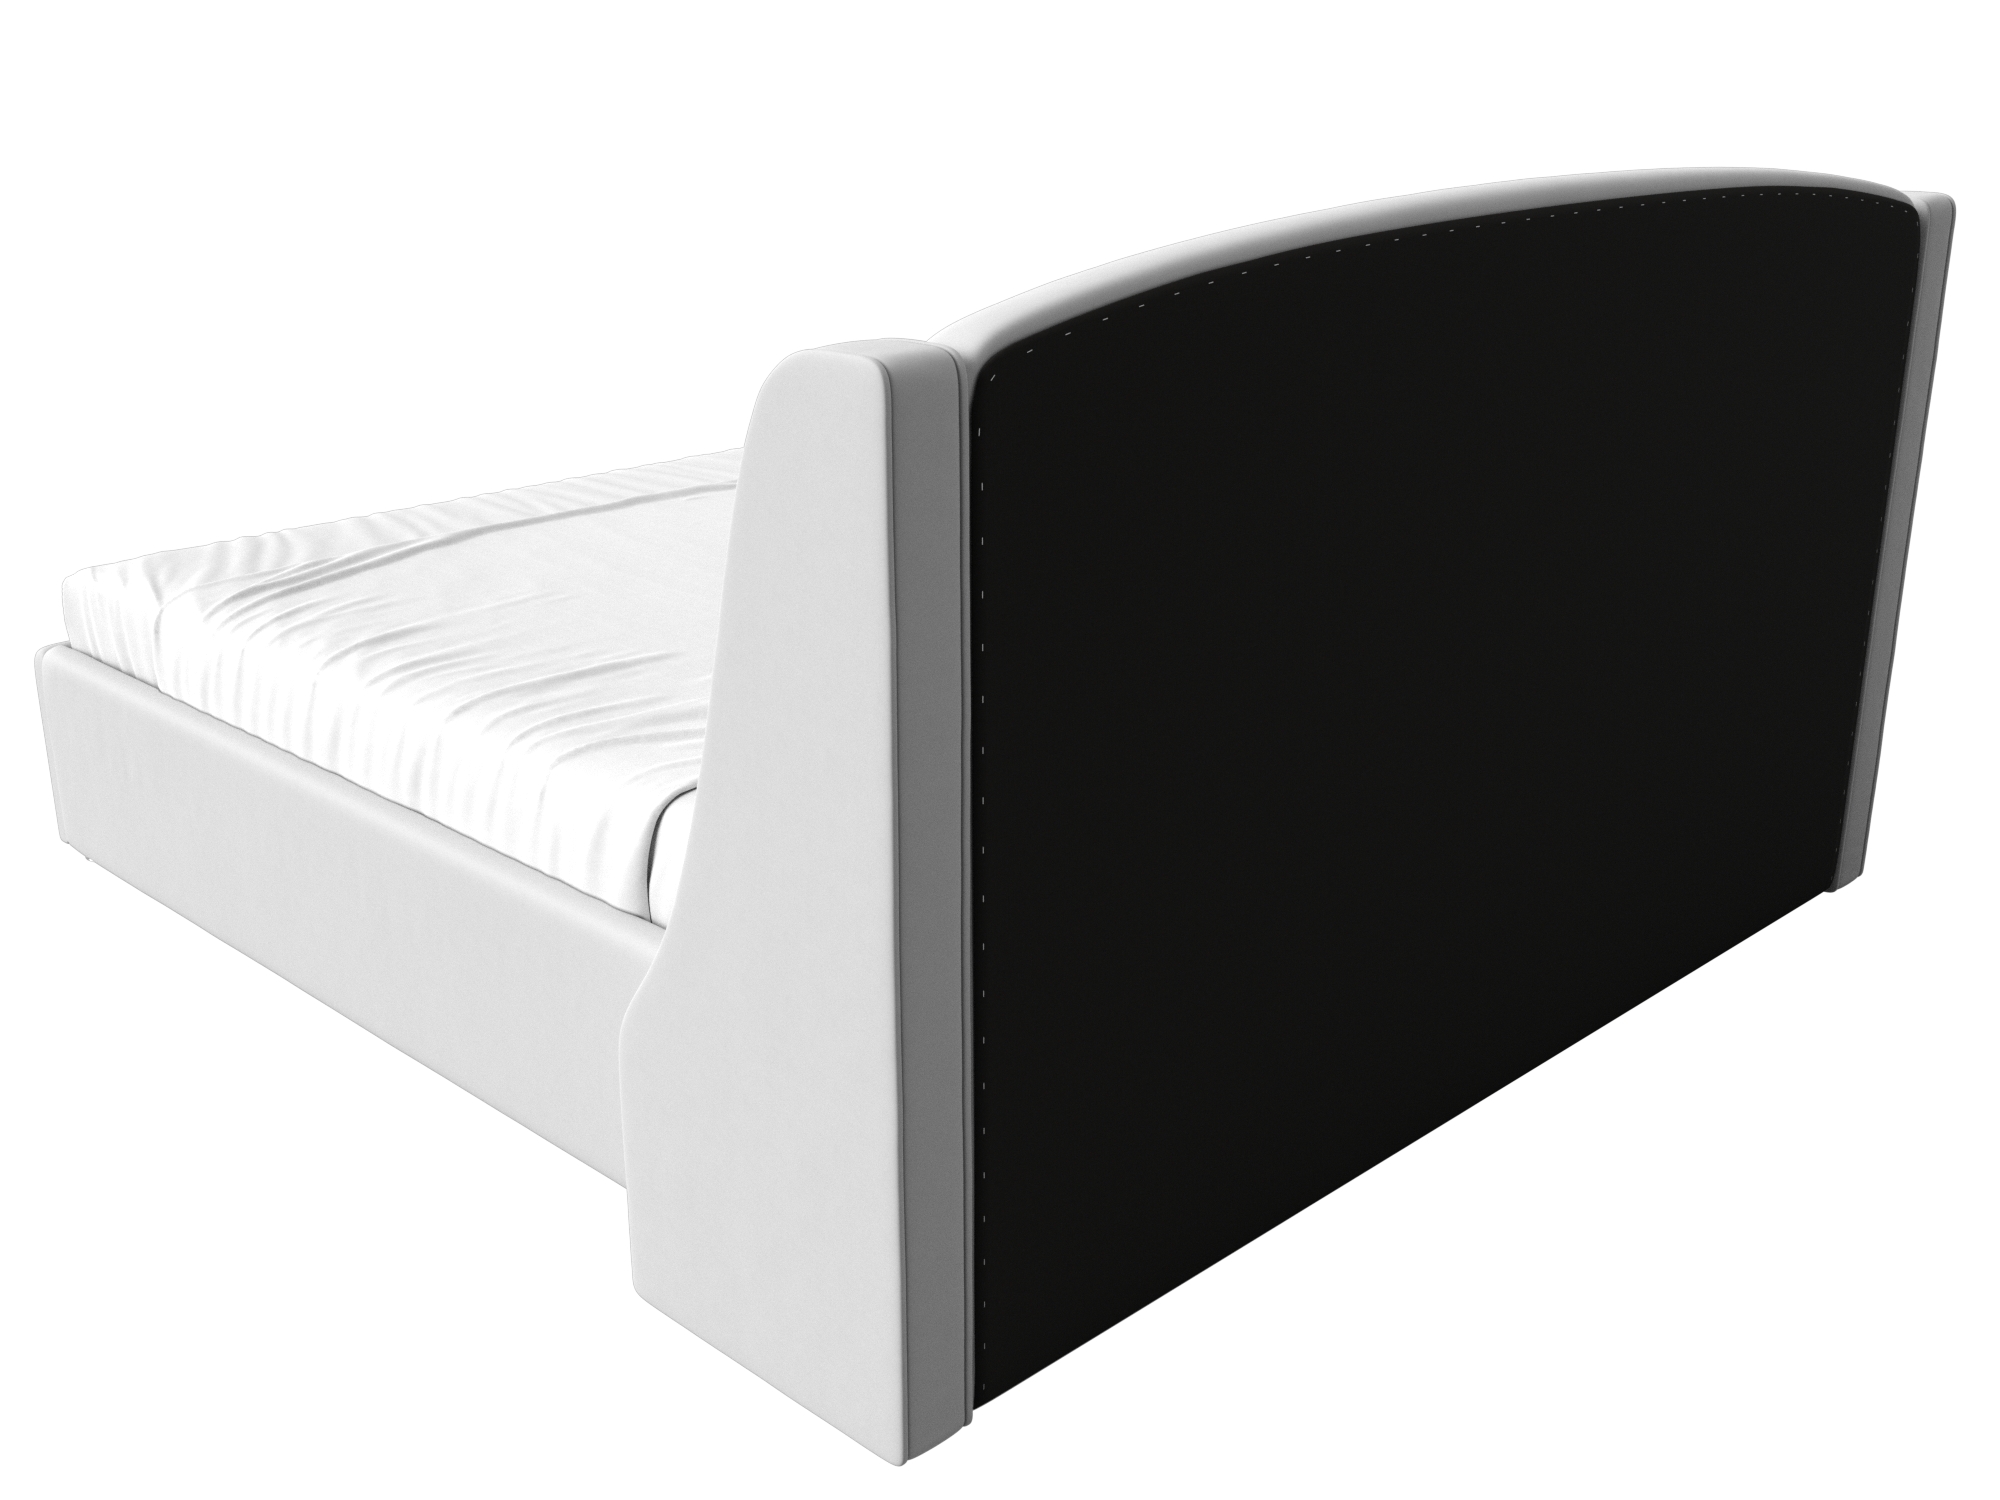 Интерьерная кровать Лотос 160 (Белый)